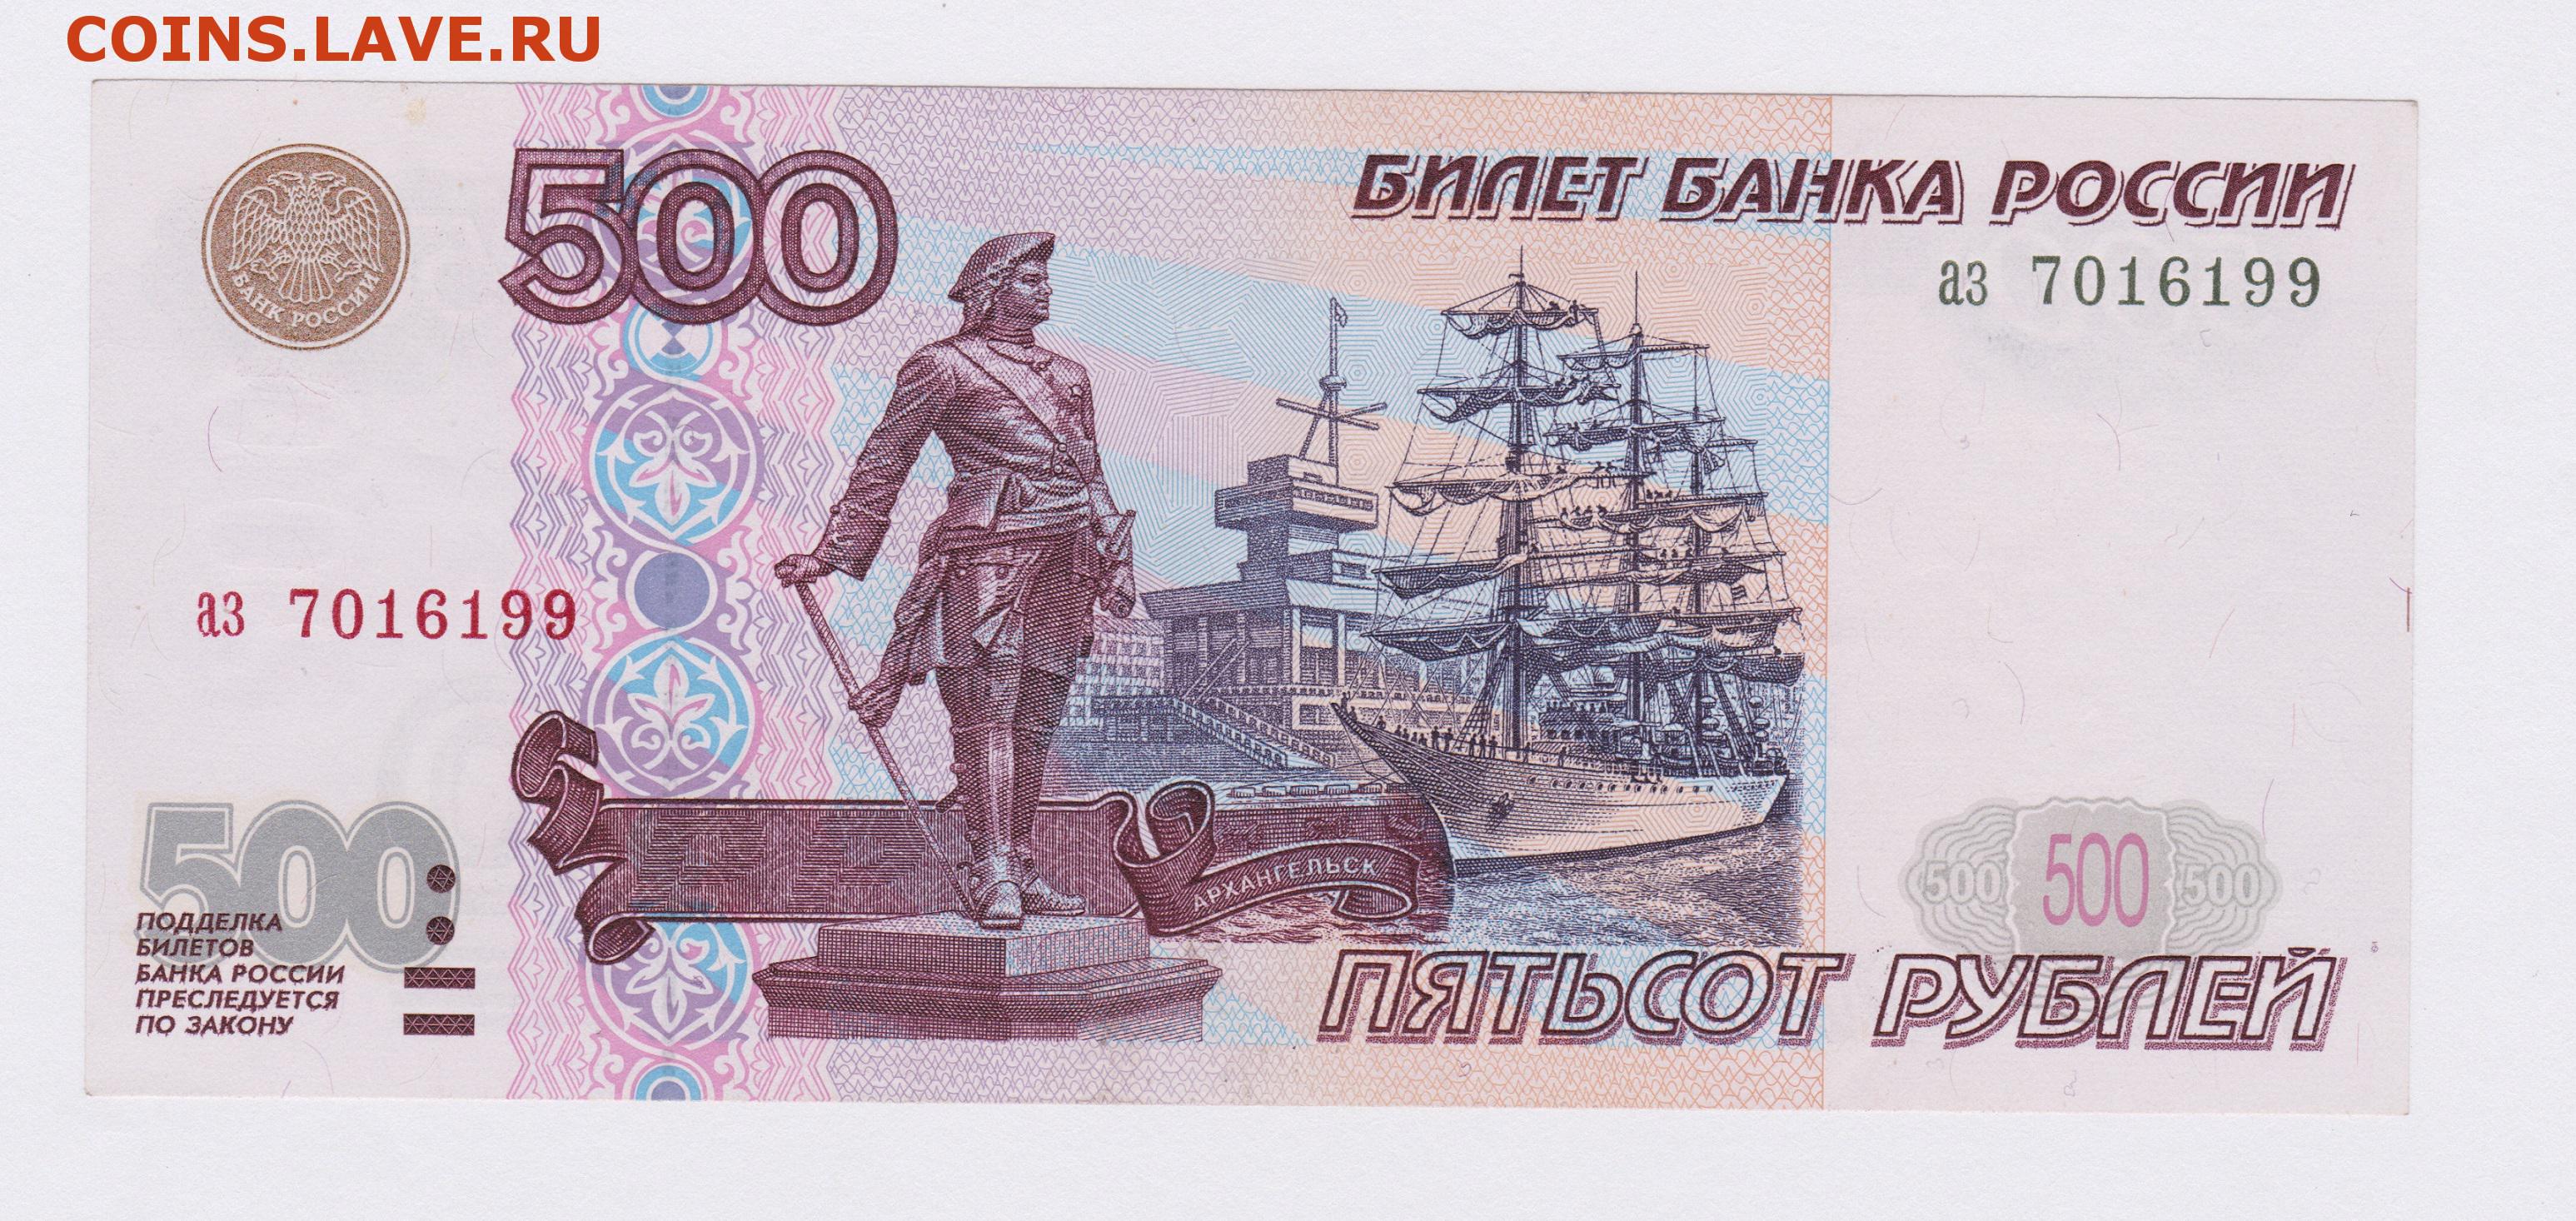 500 рублей действующие. Купюра 500 рублей. 500 Рублей. Банкнота 500 рублей. 500 Рублей изображение на купюре.